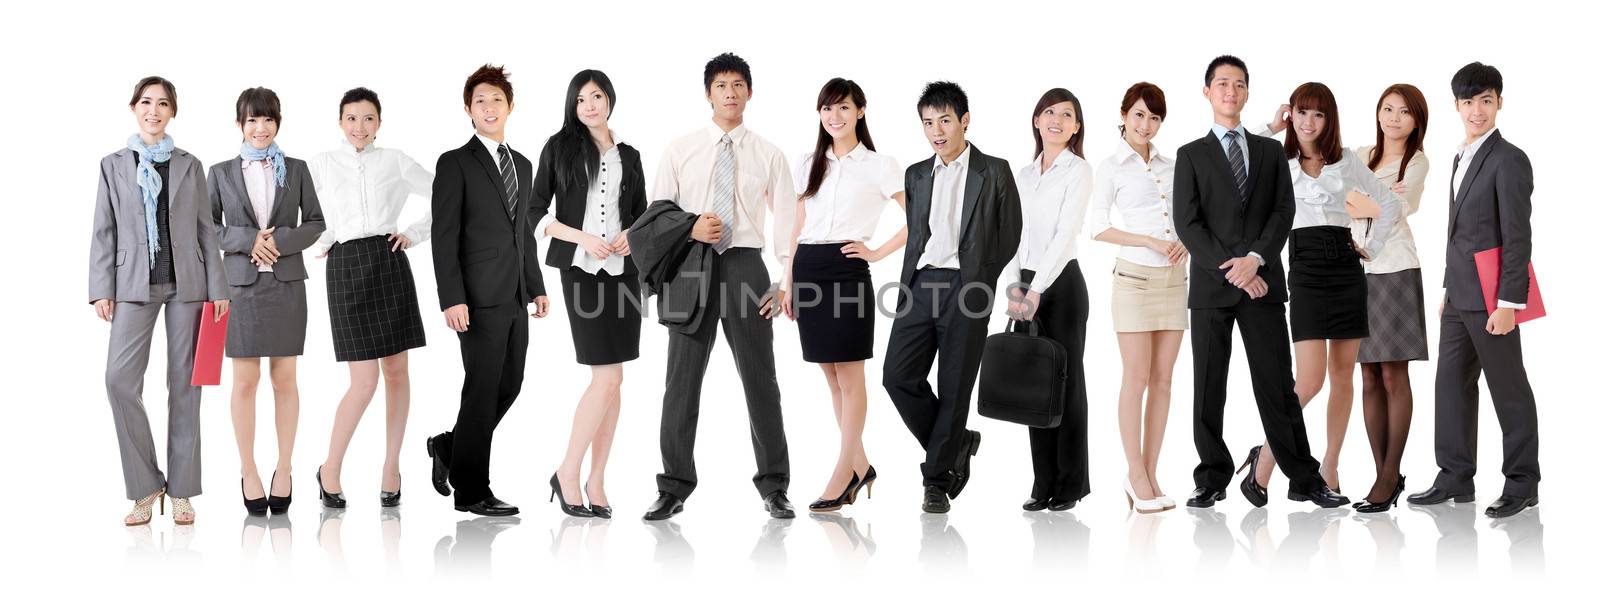 Asian business team by elwynn